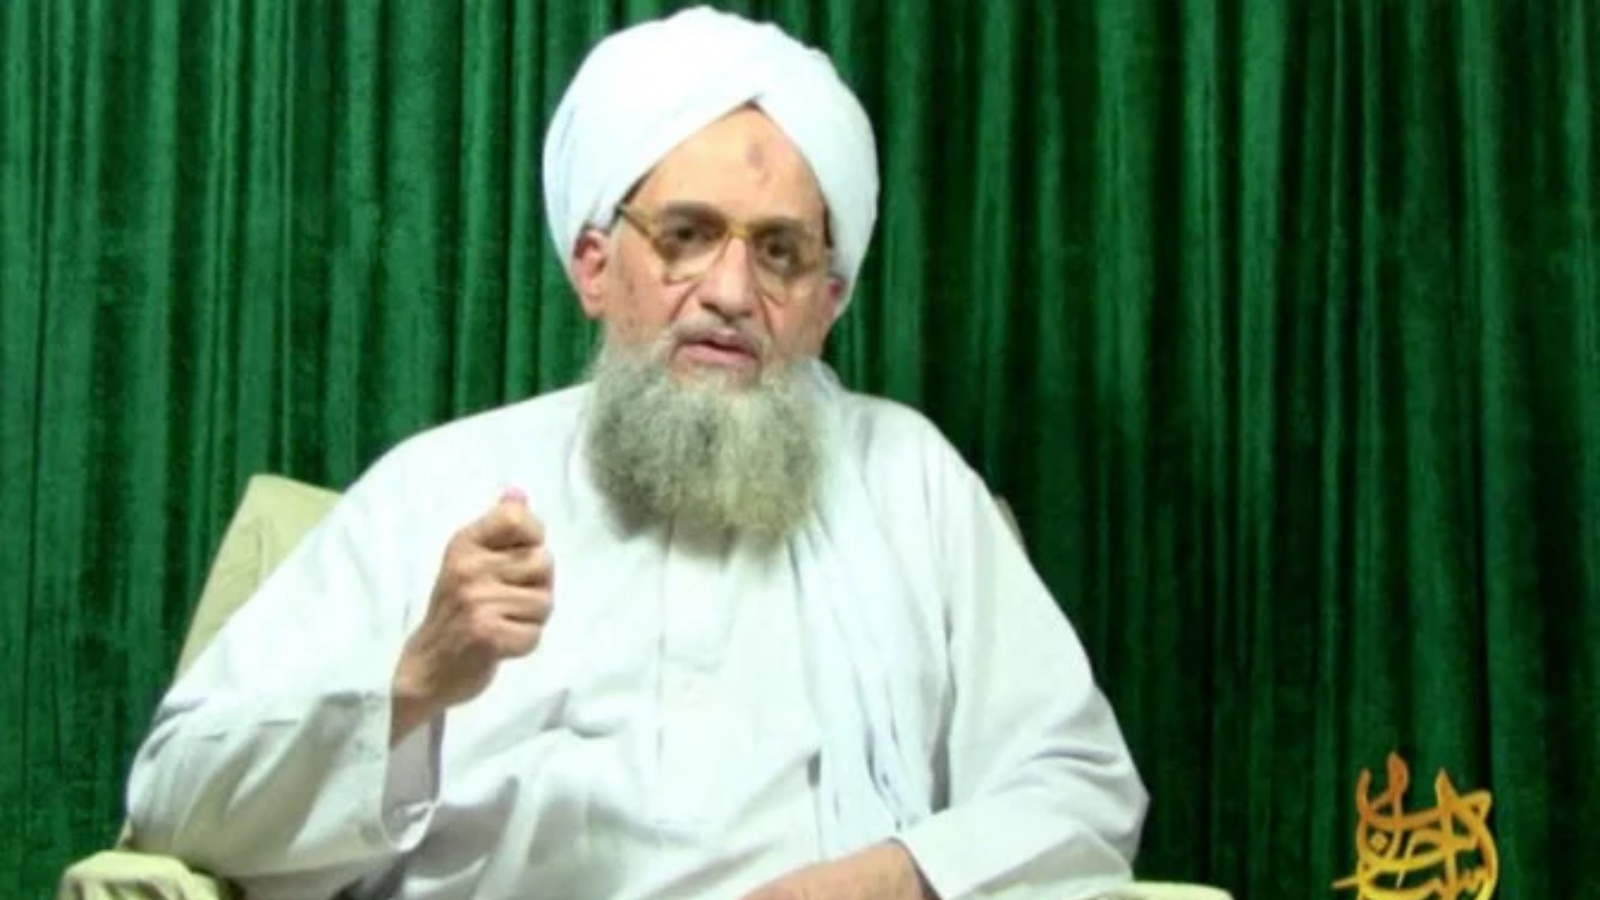 زعيم القاعدة أيمن الظواهري يظهر في شريط فيديو للقاعدة صدر الثلاثاء 11 أكتوبر 2011